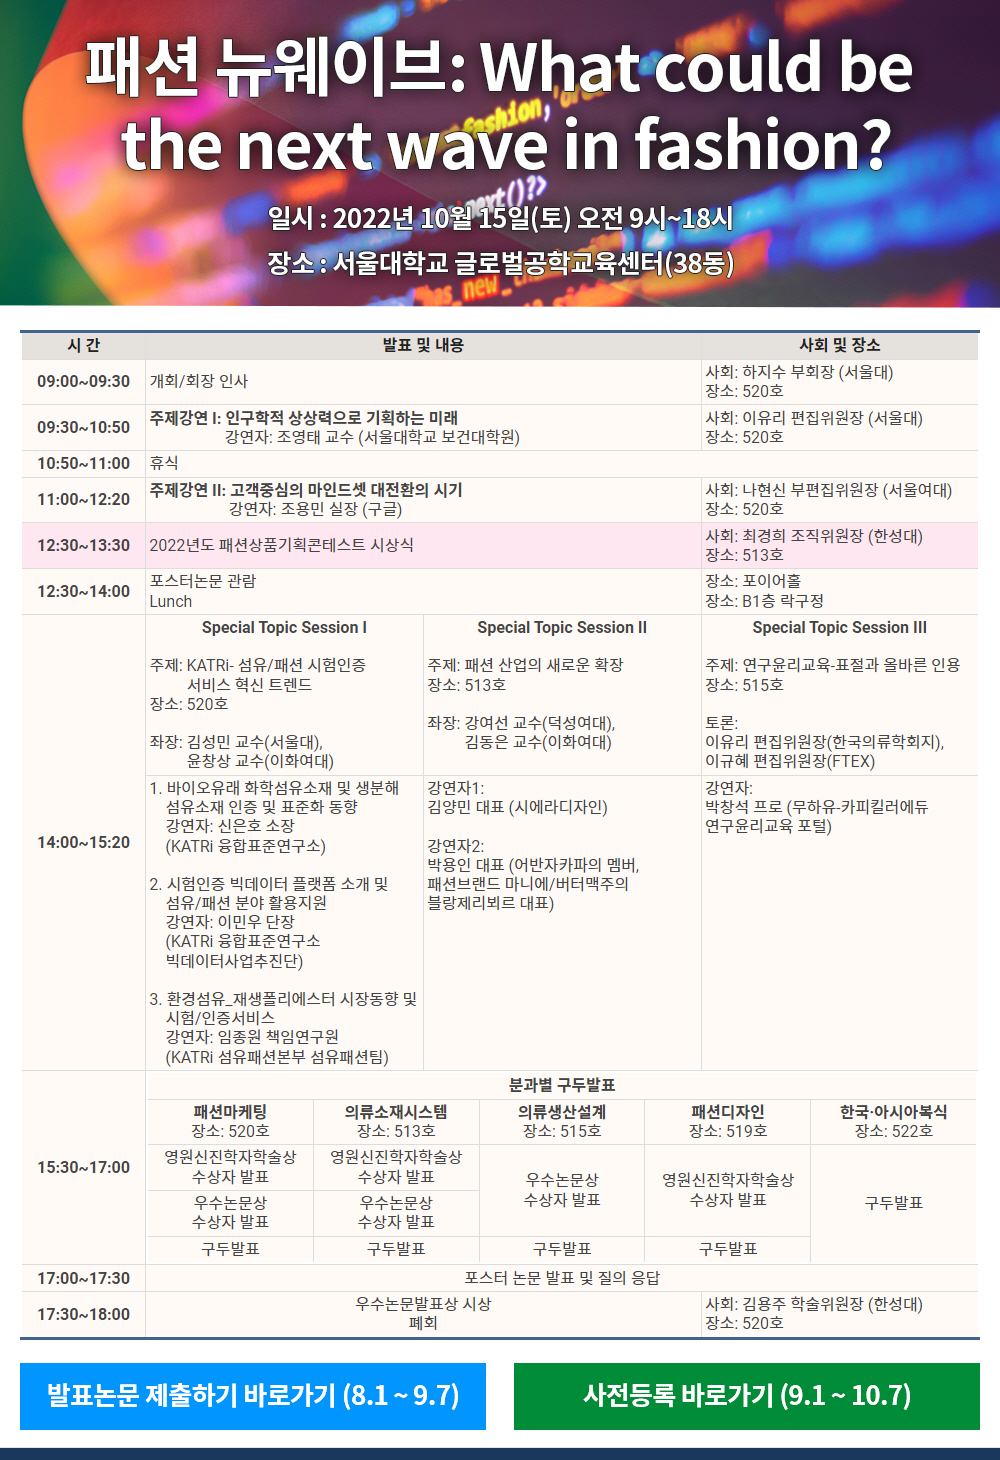 2022년도 한국의류학회 추계학술대회 안내 및 발표논문 모집 (9월 7일까지 연장)